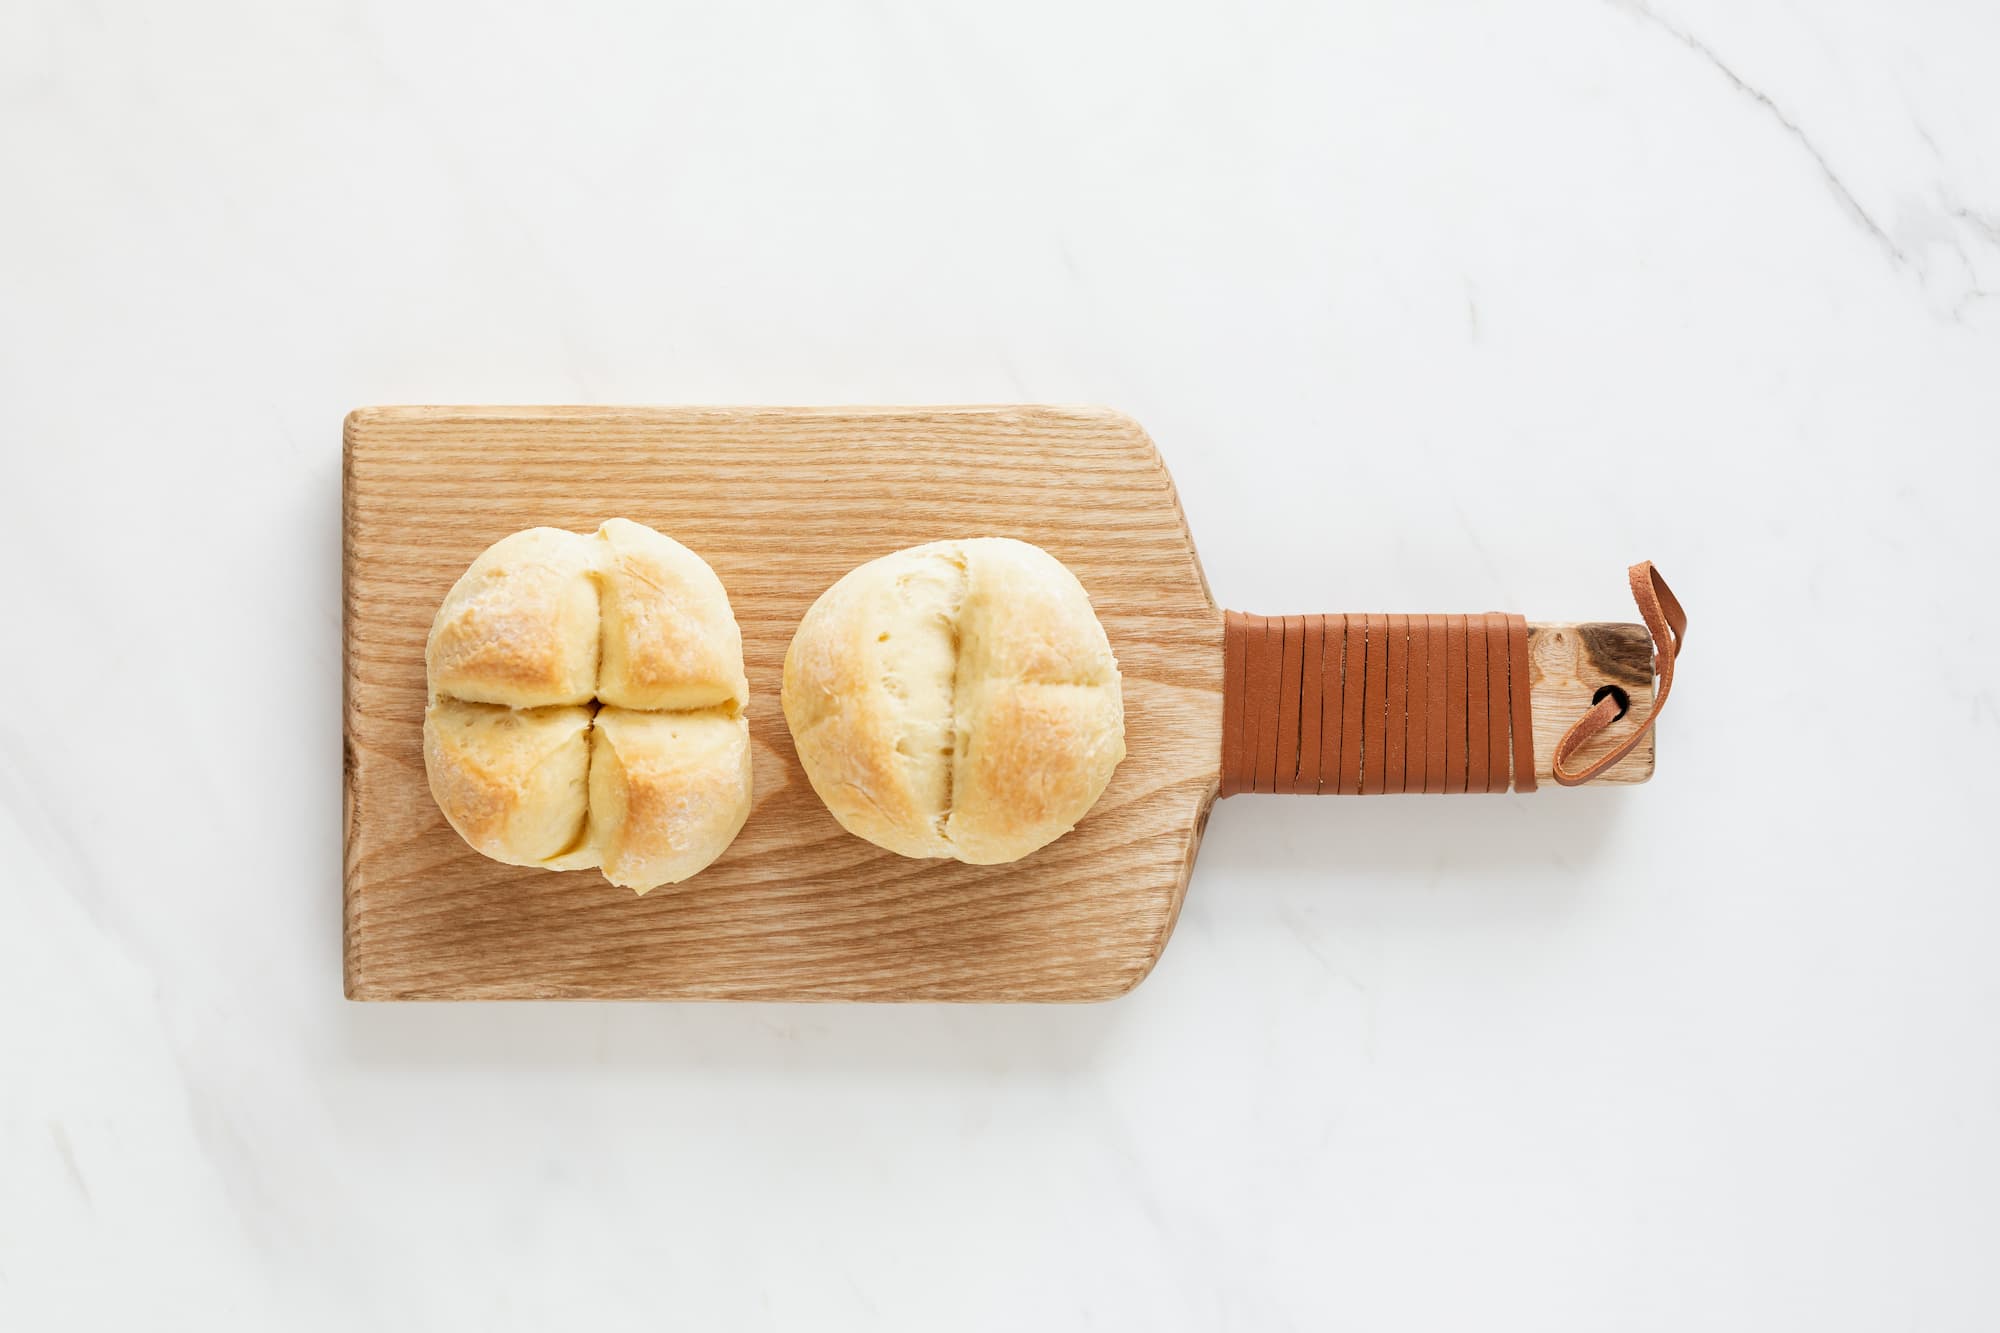 Two bread rolls on a cutting board